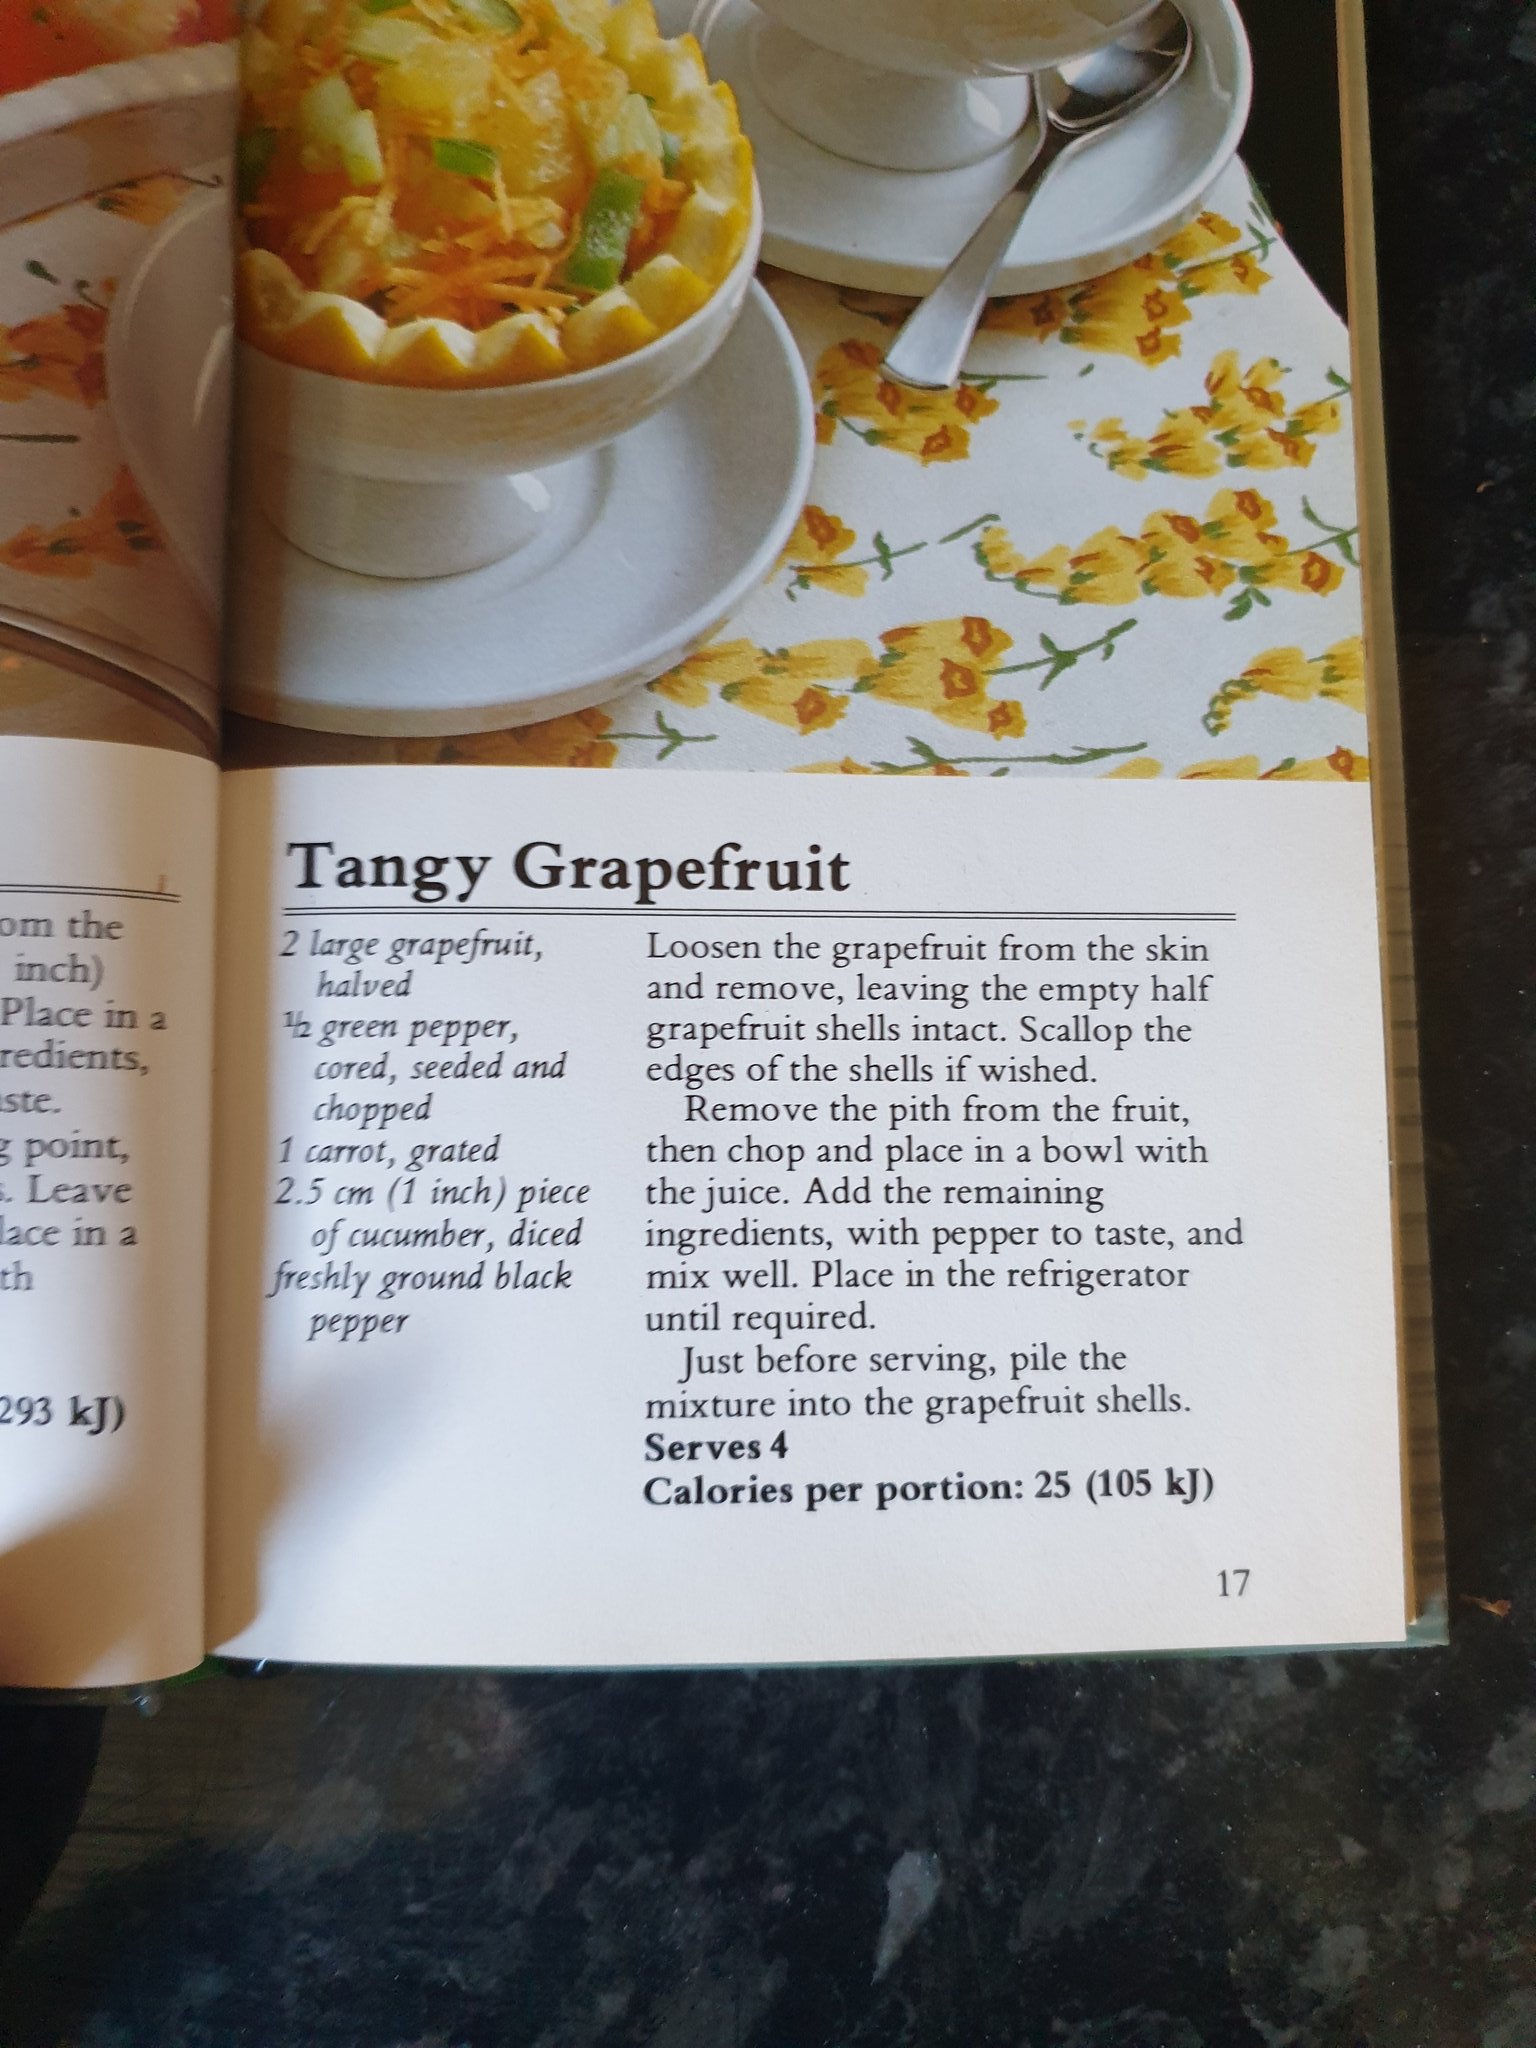 Tangy Grapefruit recipe